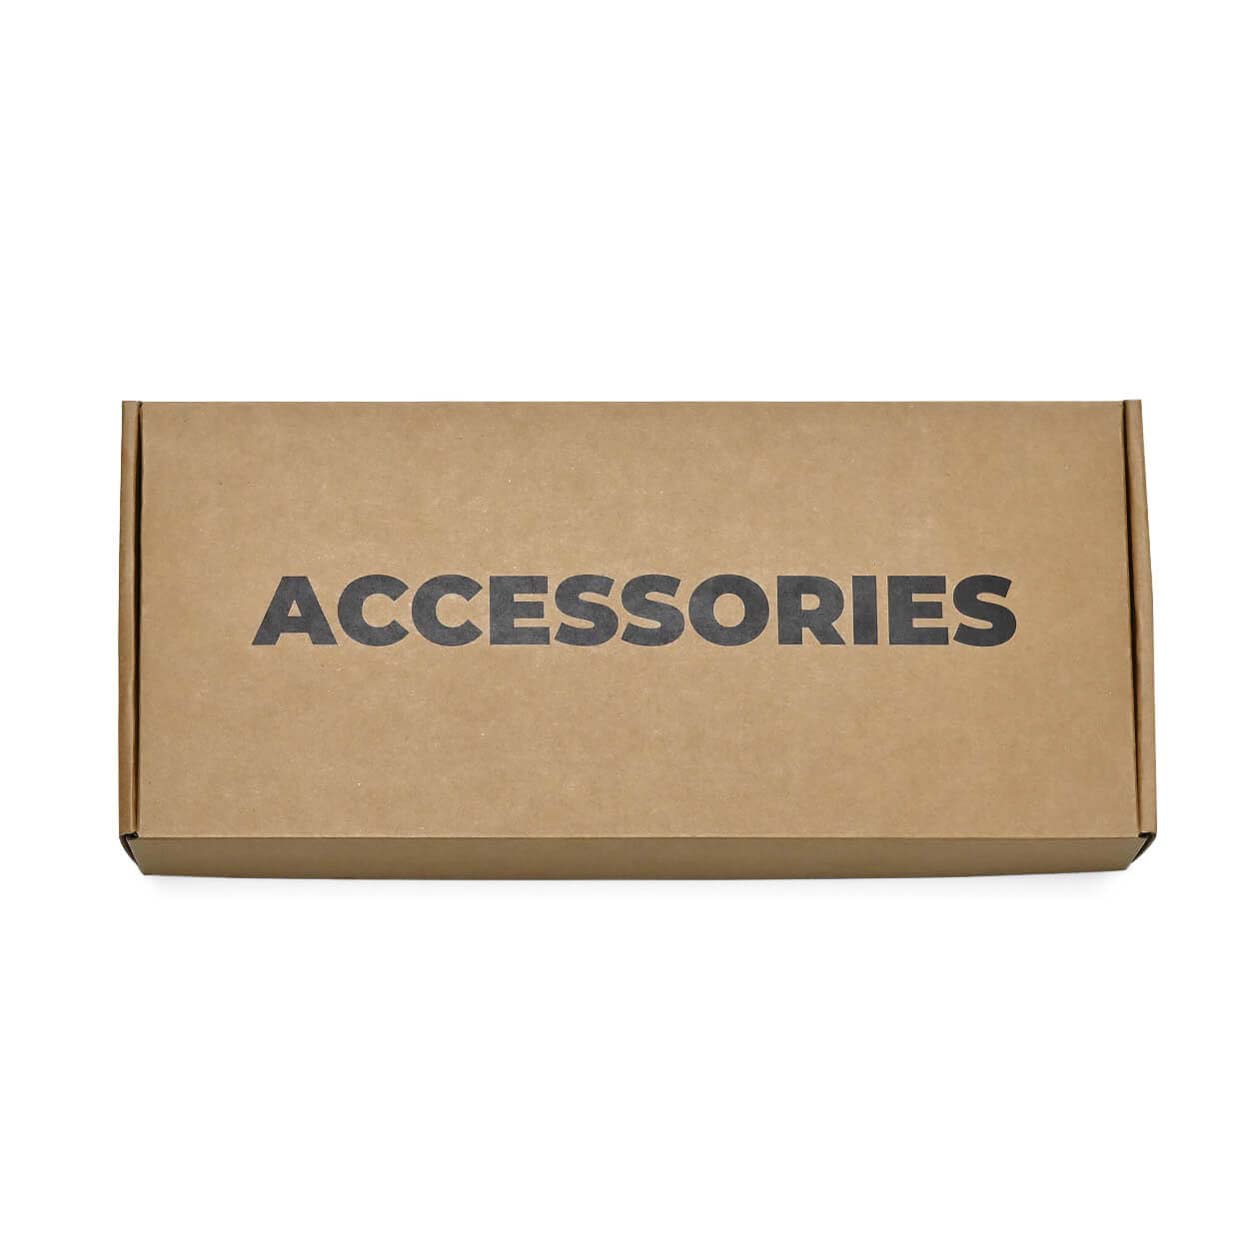 Accessories Box